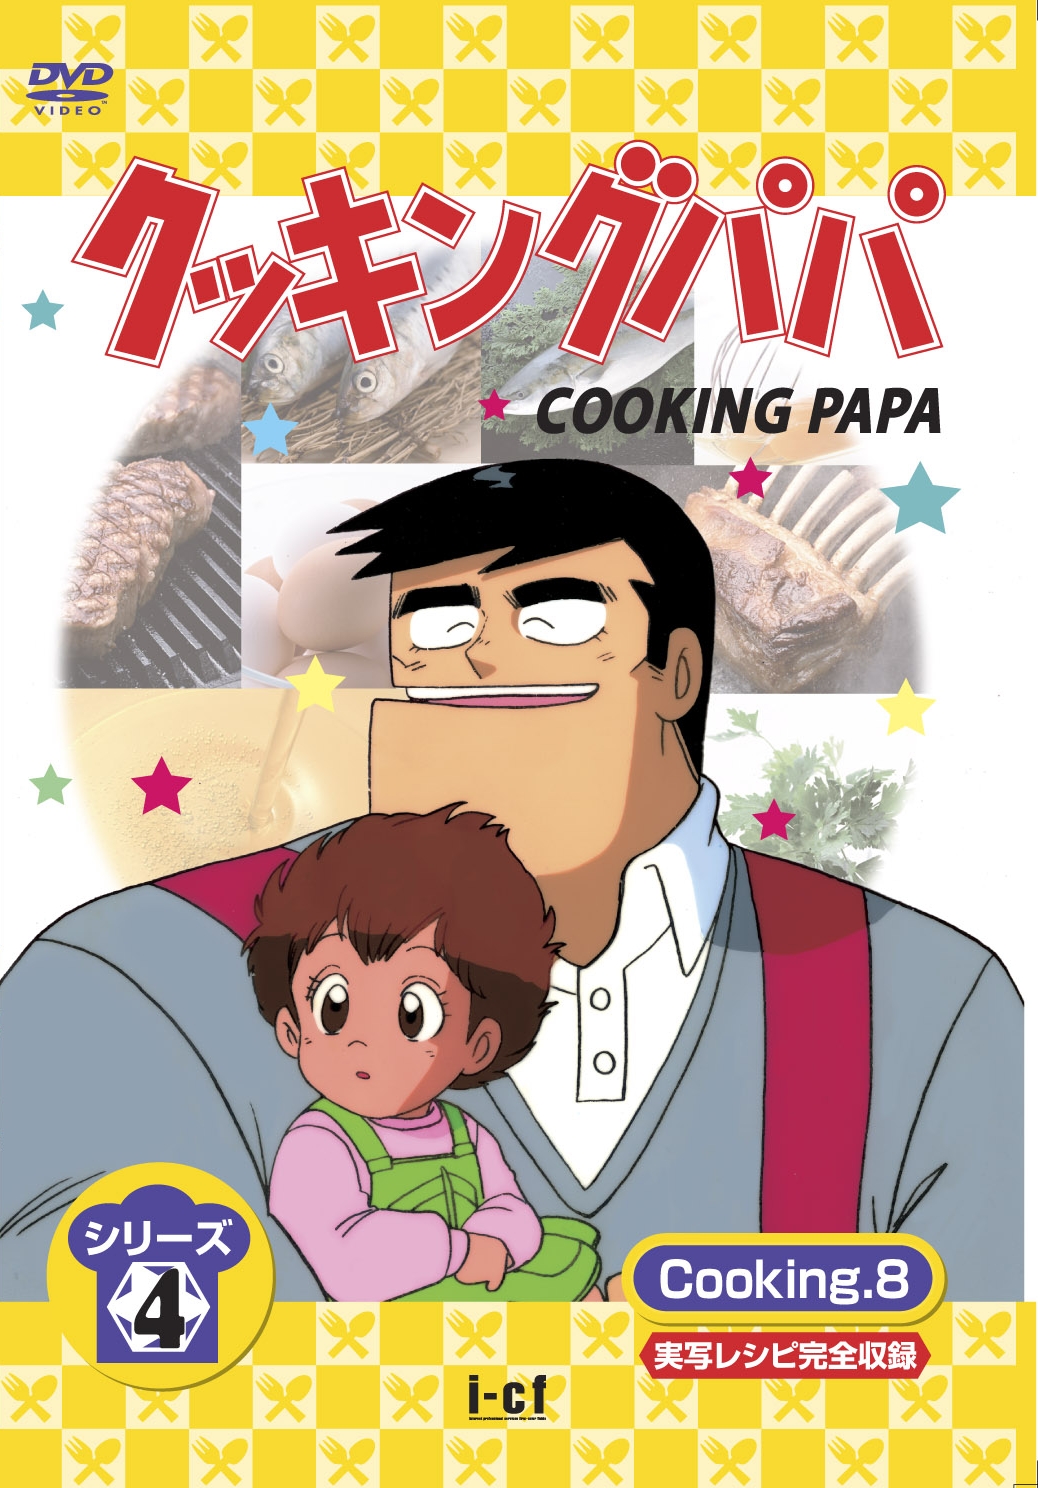 クッキングパパ シリーズ4 Dvd Cooking 1 8 I Cfレーベルblog